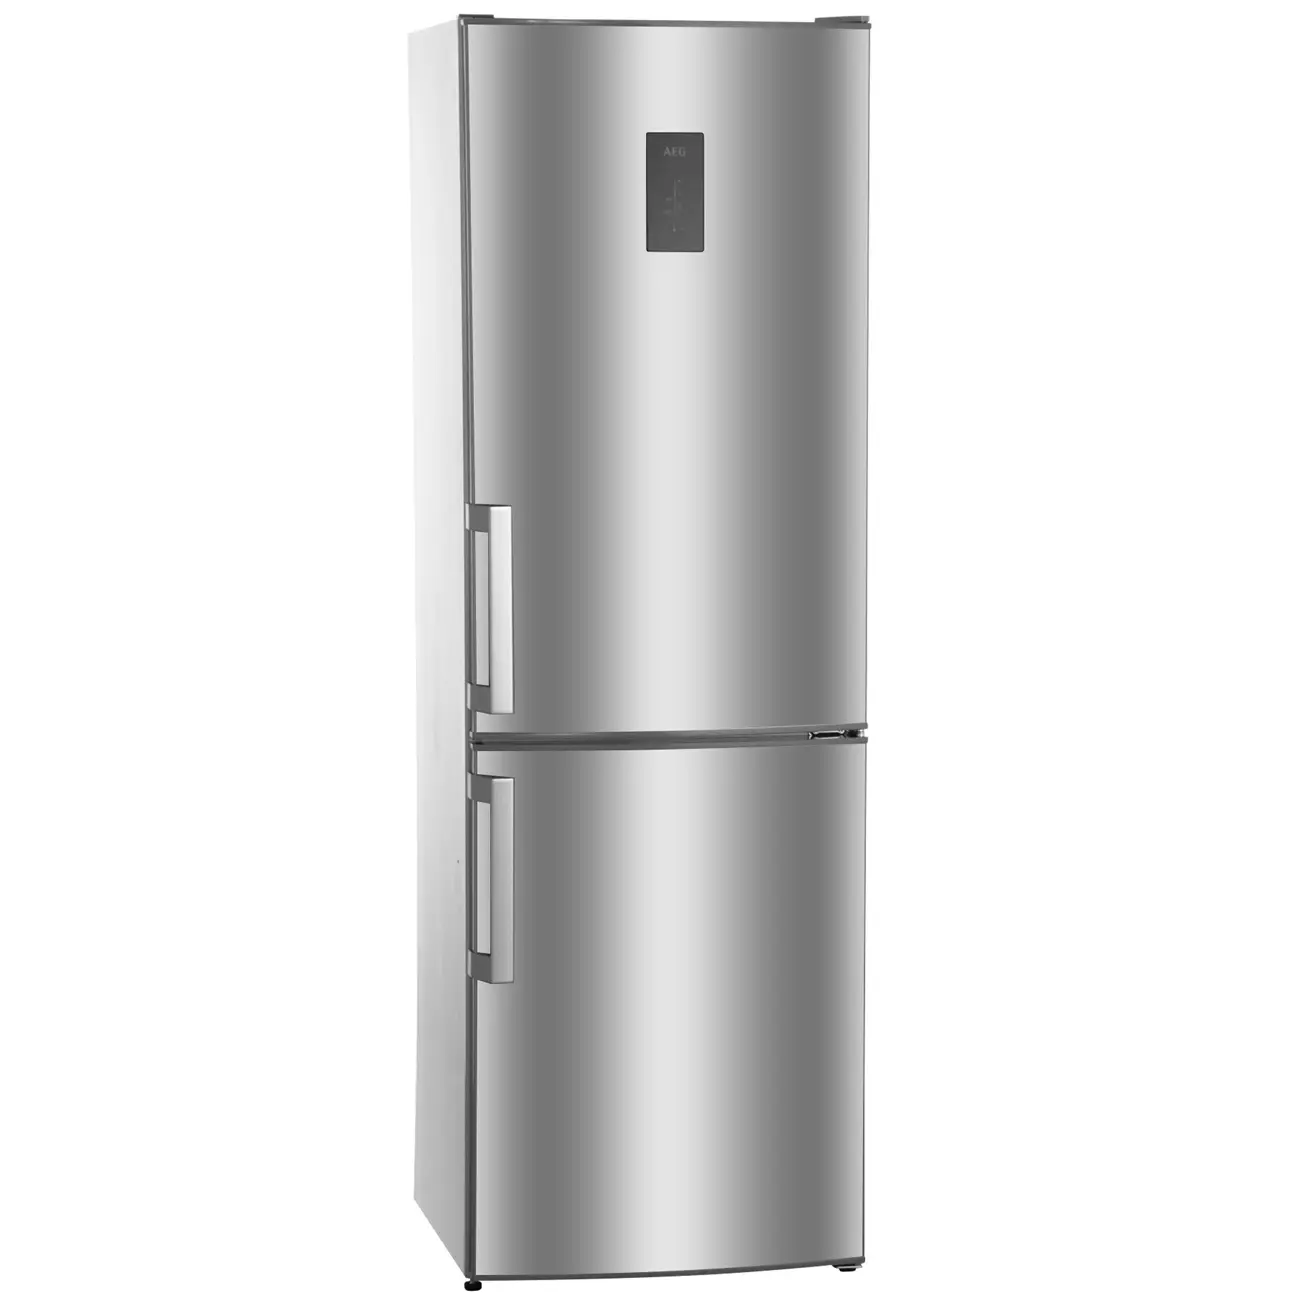 Эльдорадо купить холодильник недорогой. Холодильник AEG rcb63426tx. Холодильник AEG S 83600 cmm0. AEG холодильник rcb63426tx производитель. Холодильник AEG rcb63426tx серебристый.